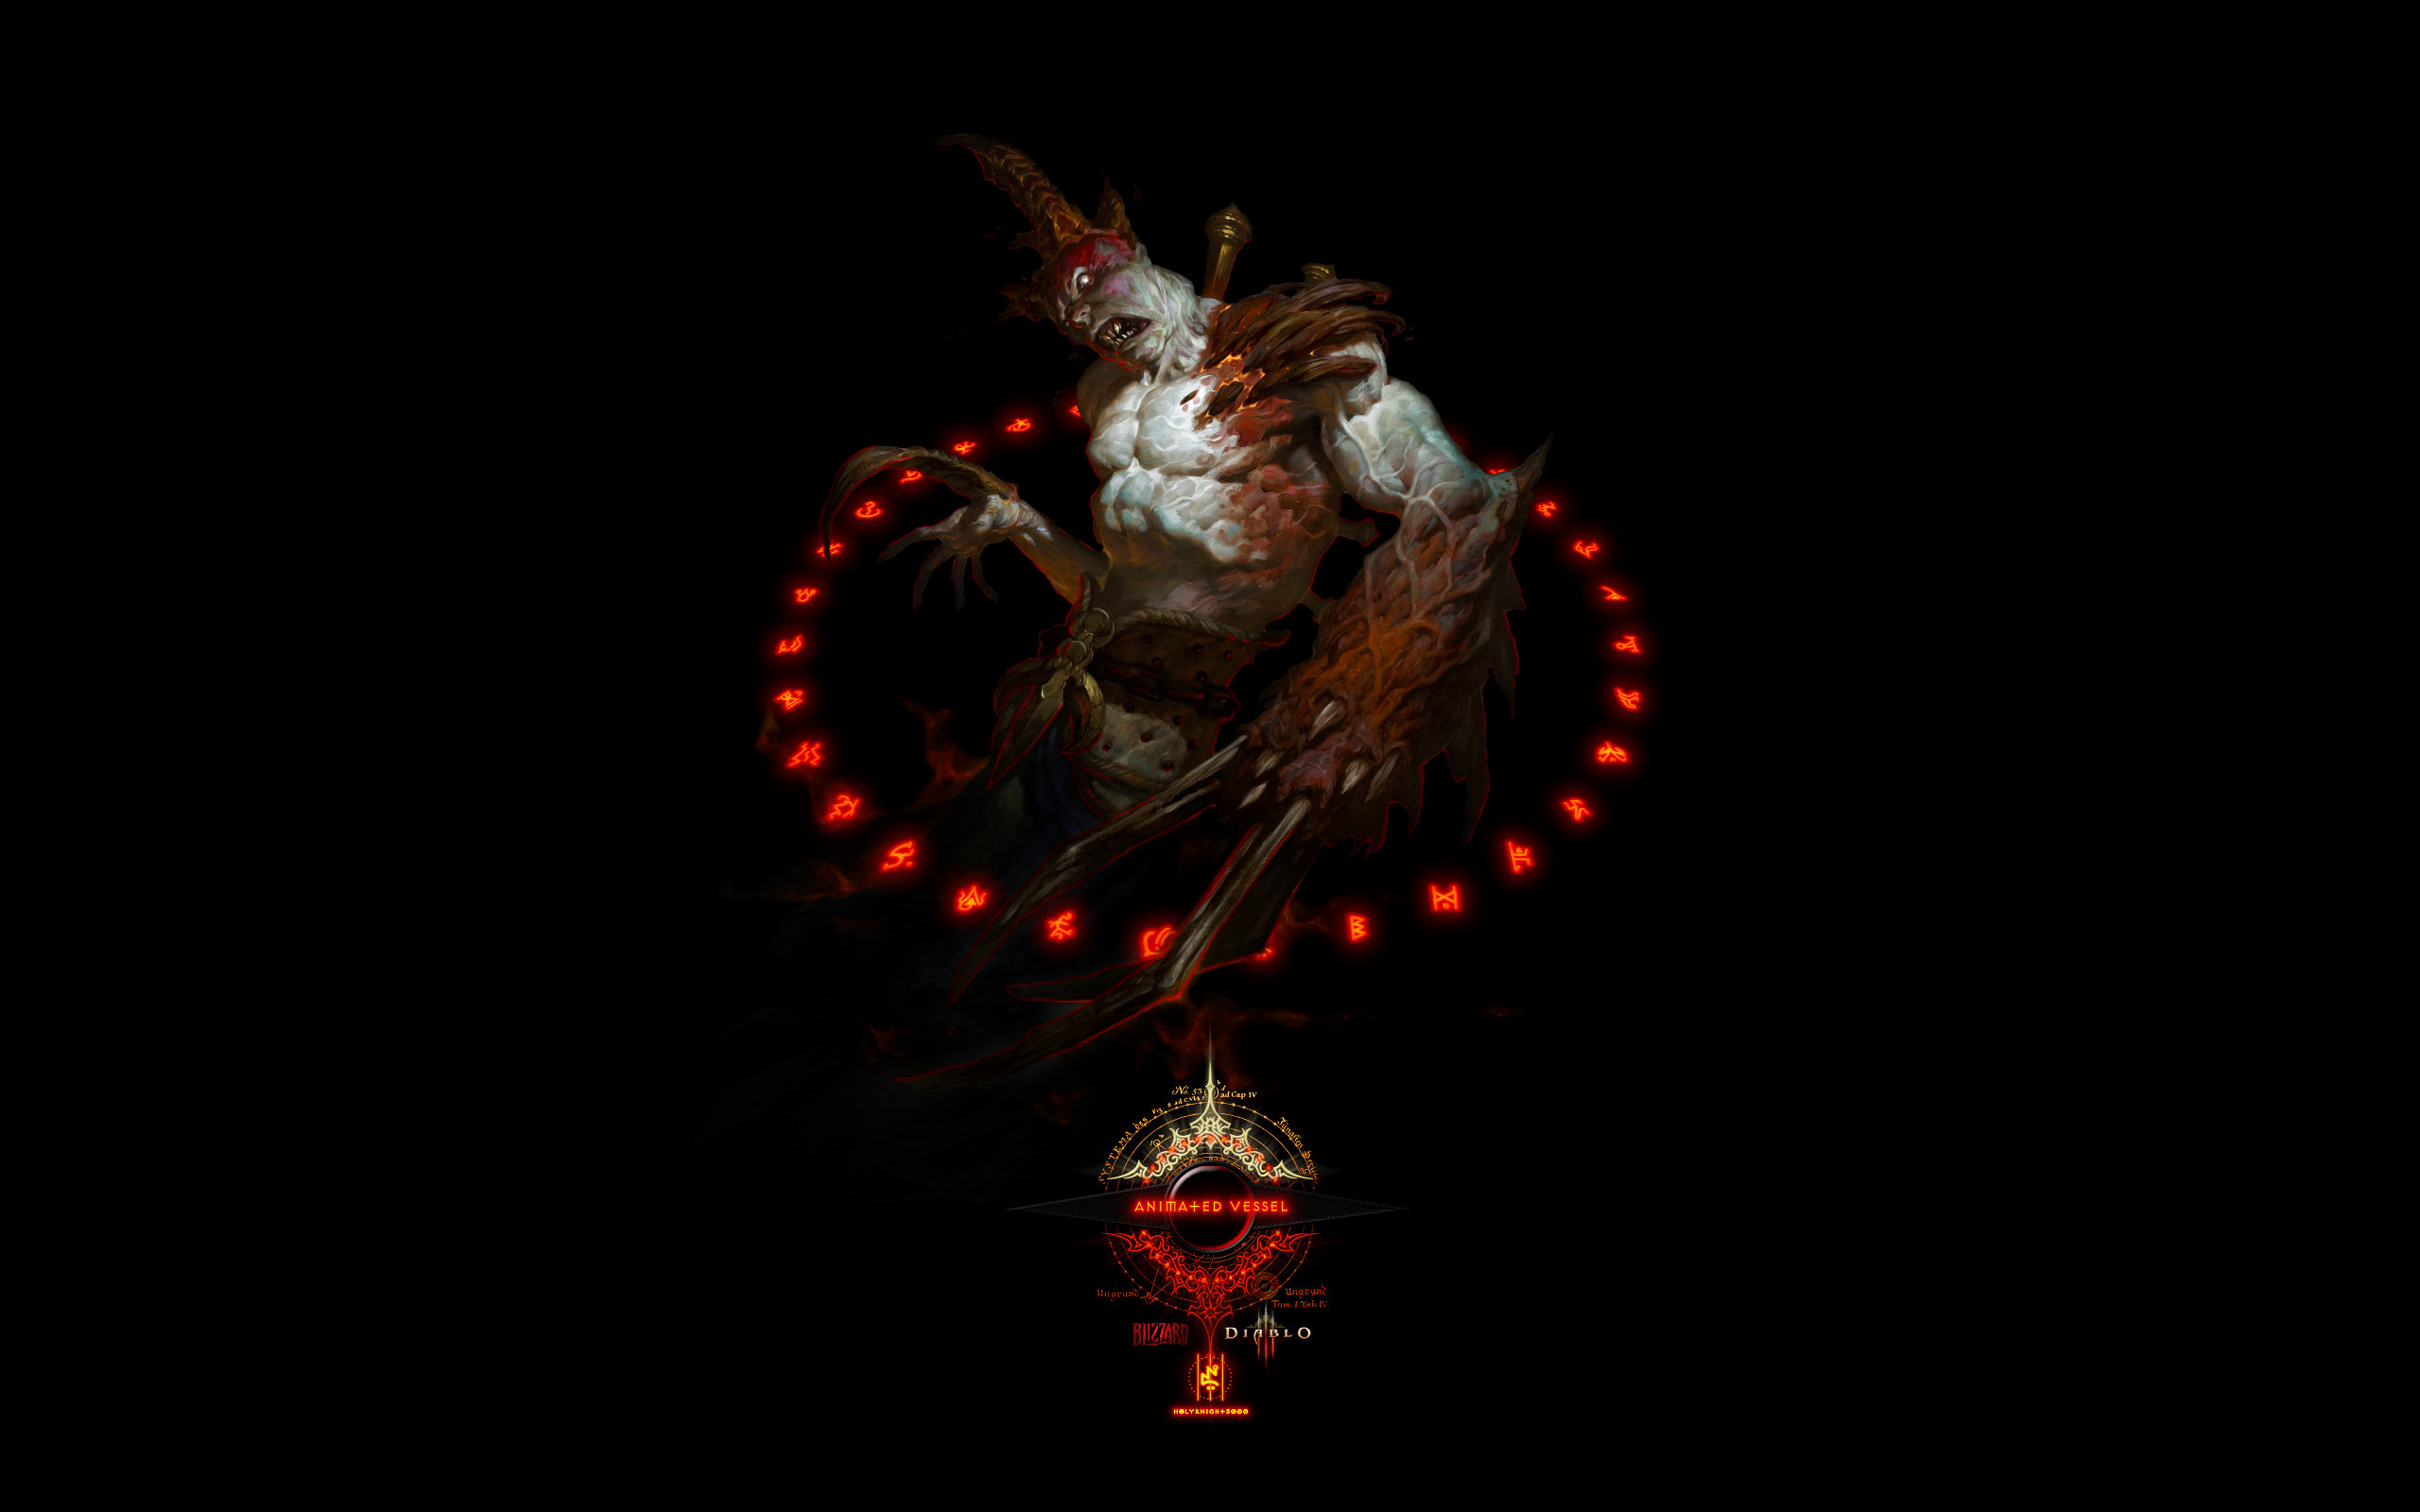 Diablo Iii Animated Vessel Widescreen Wallpaper